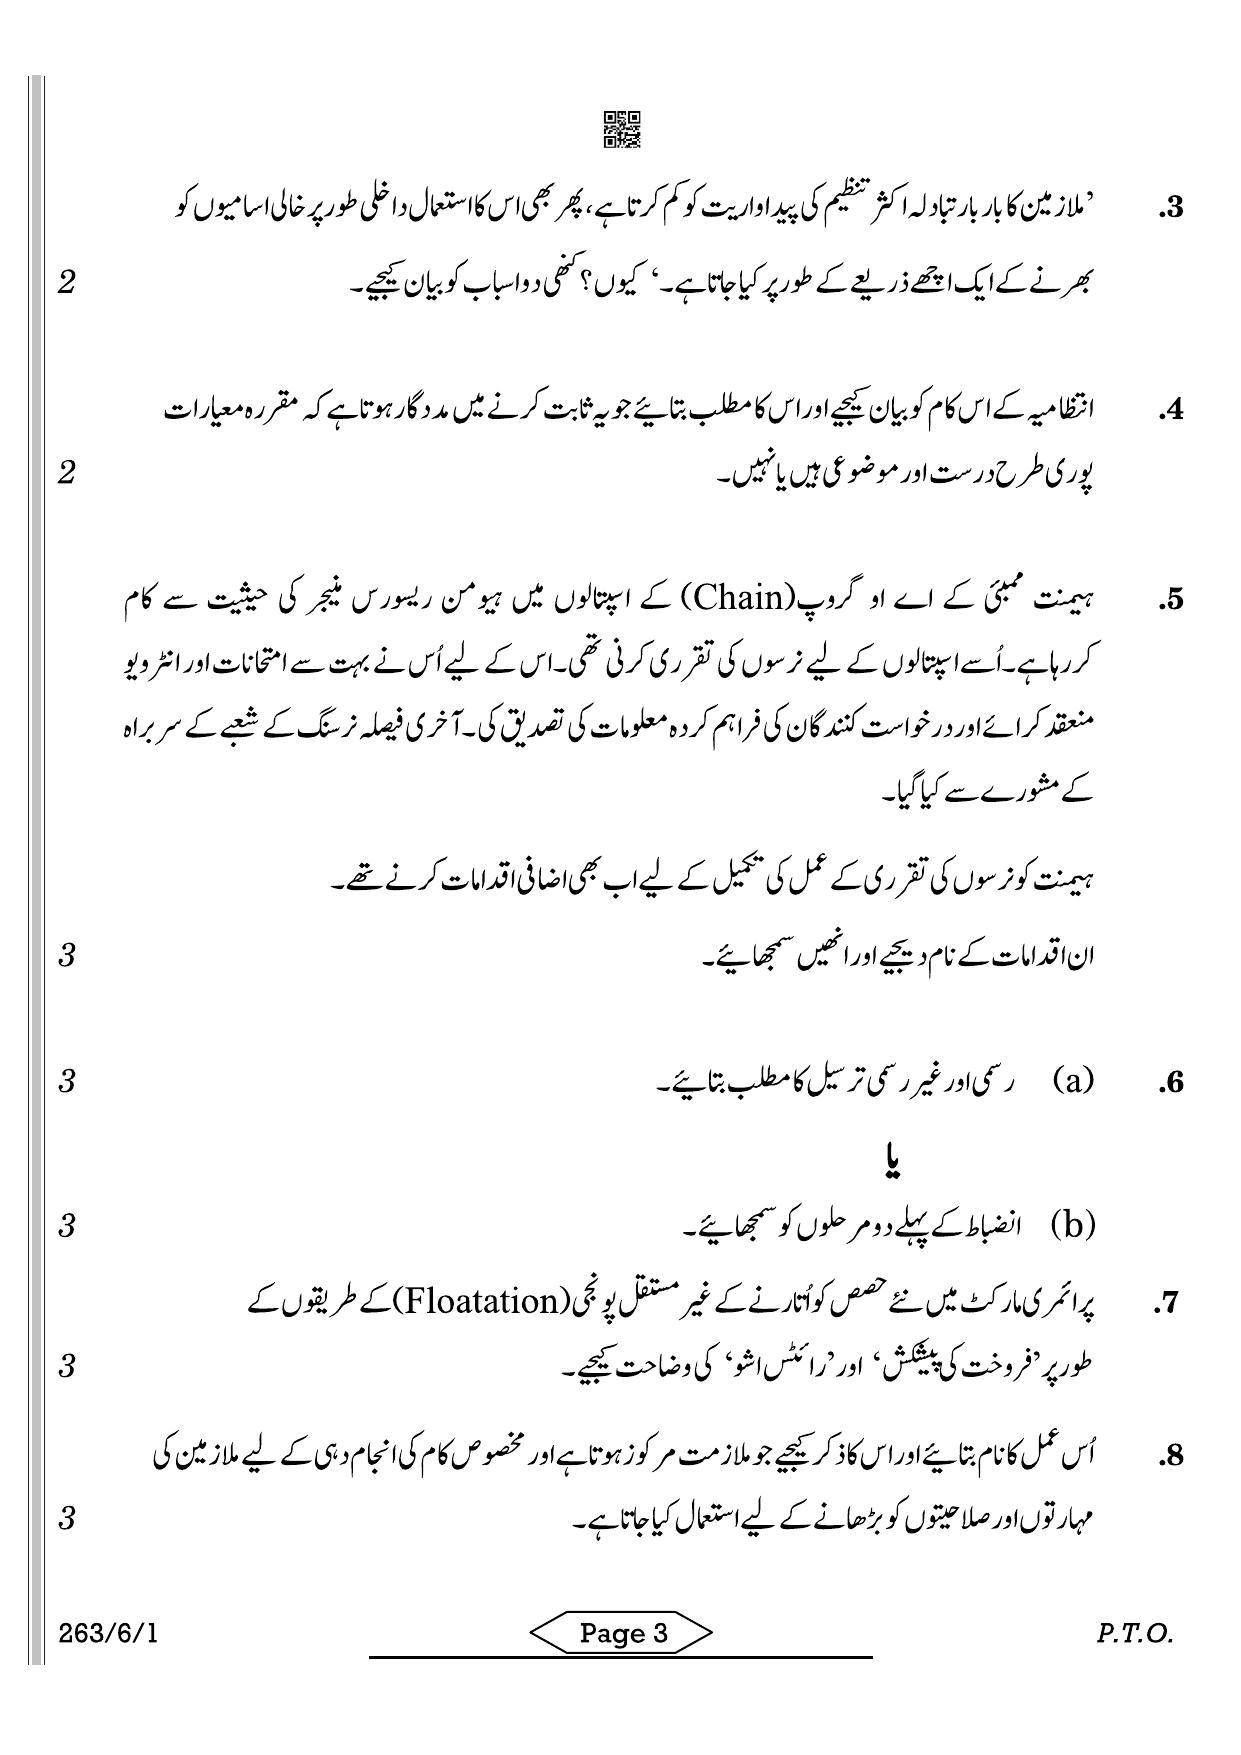 CBSE Class 12 263-6-1 Business Studies Urdu 2022 Compartment Question Paper - Page 3